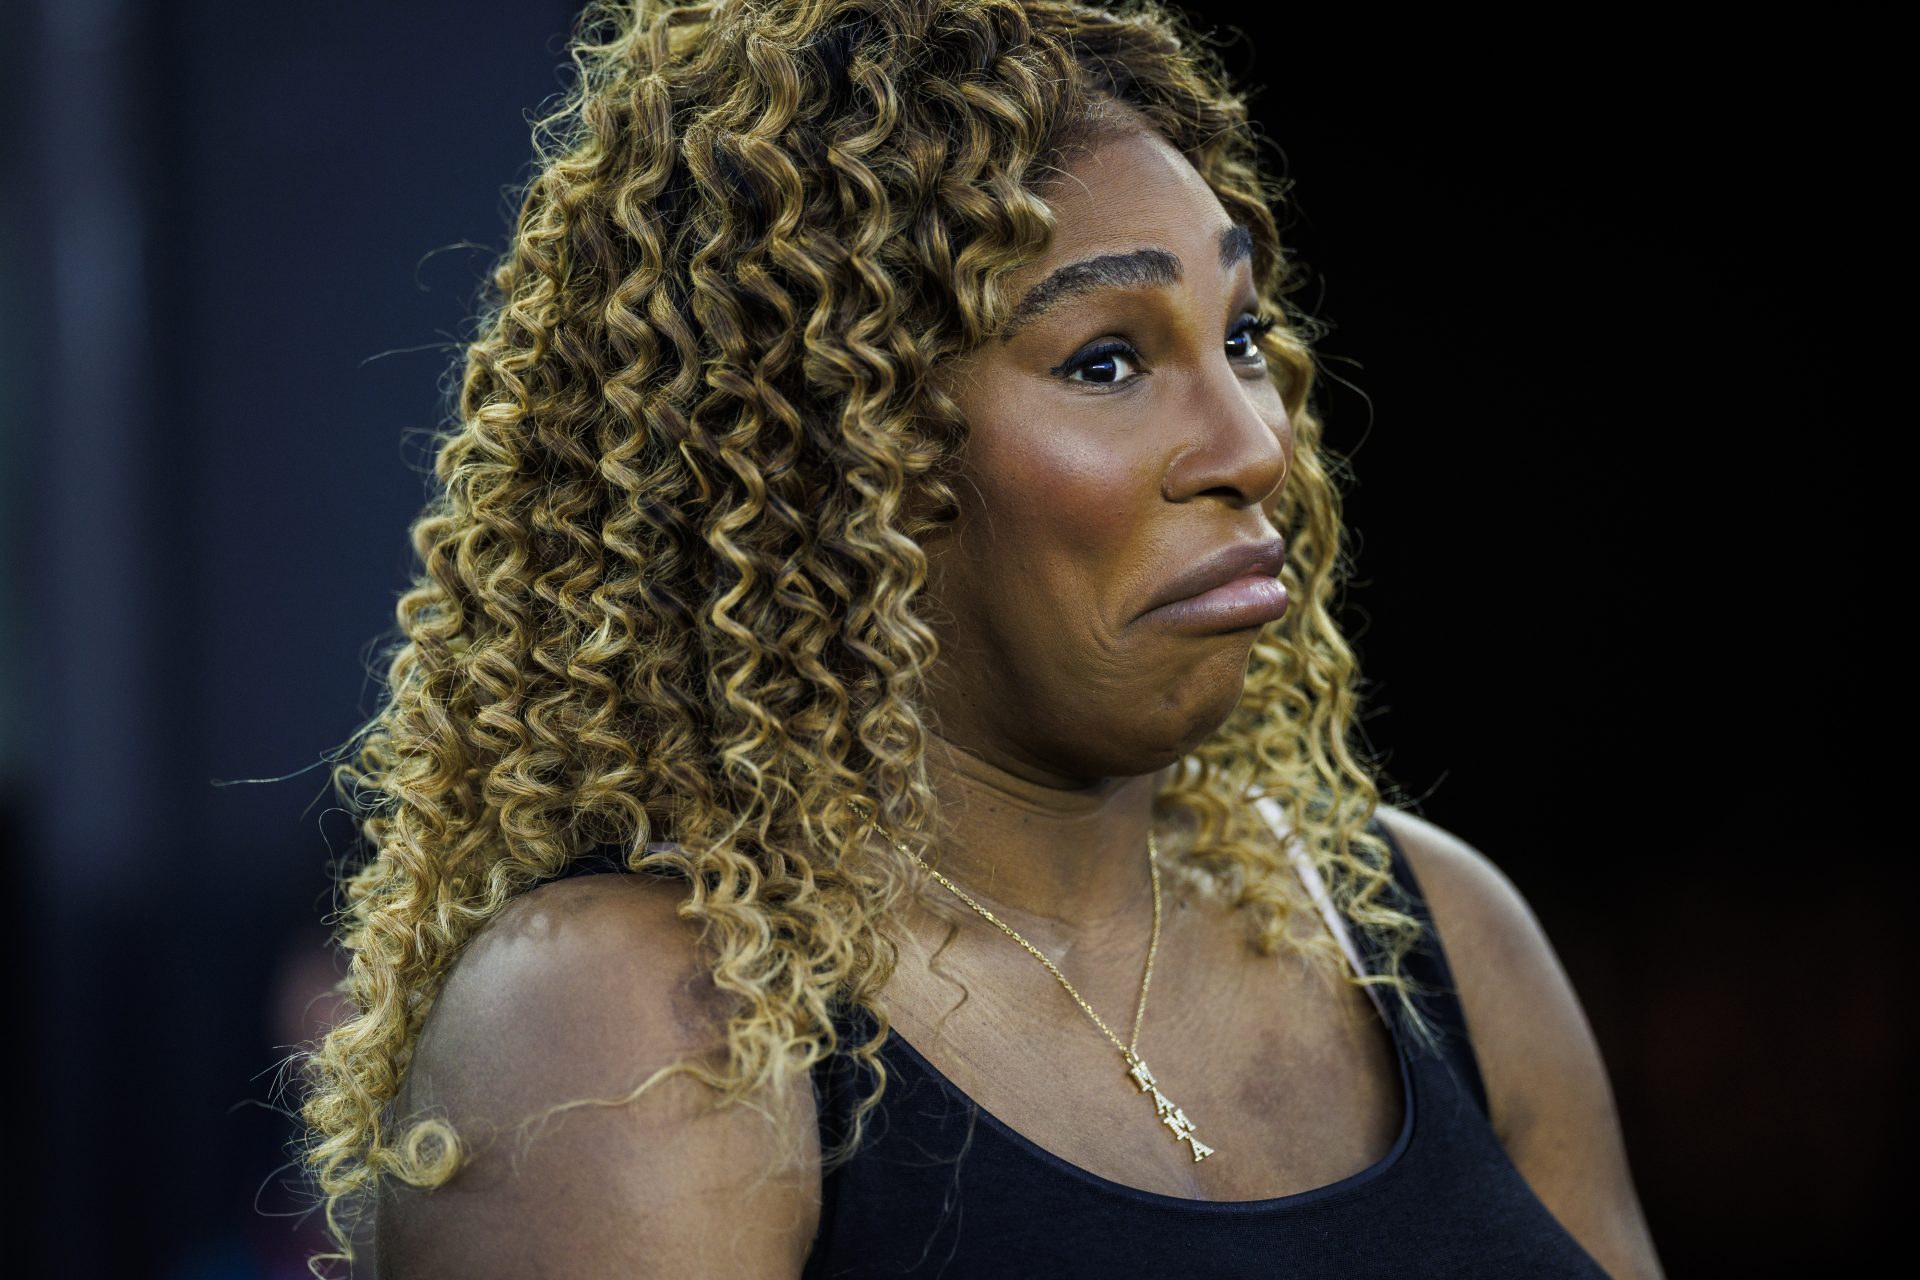 ¡Increíble! Deniegan el acceso a Serena Williams en un restaurante de París